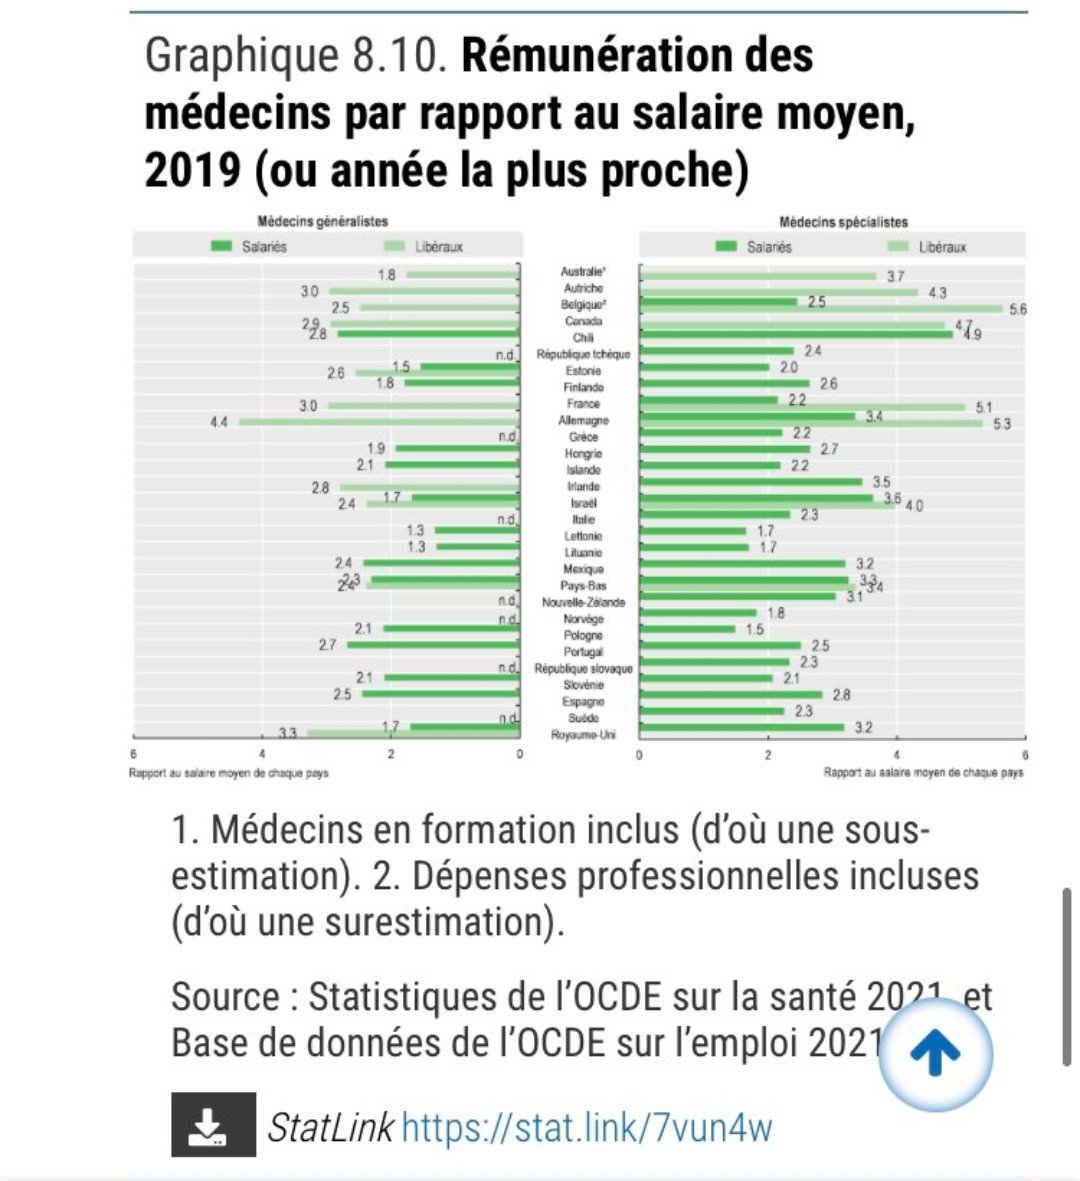 Comme d'hab, plutôt que de parler des vrais problèmes de la médecine générale (charge de travail, état du système de soin) on parle de nos rémunérations en racontant n'importe quoi.
Rappel: les MG français sont parmi les mieux rémunérés de l'OCDE rapporté aux salaire moyen.